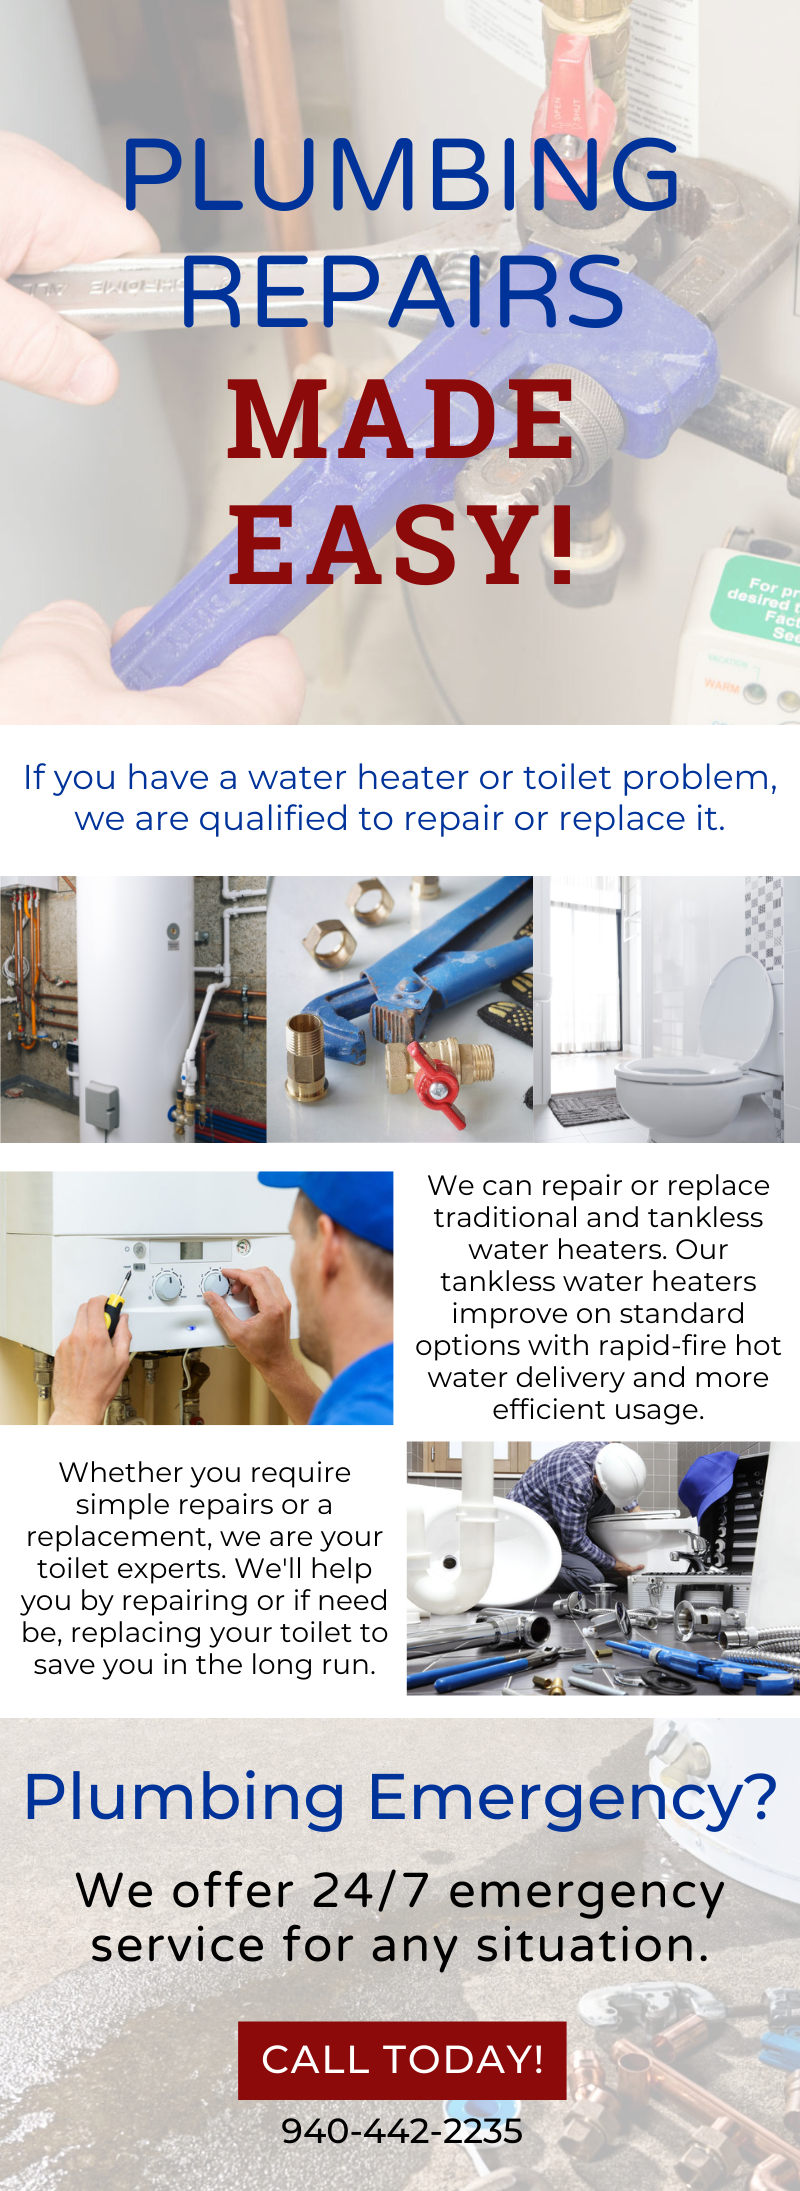 plumbing repairs infographic